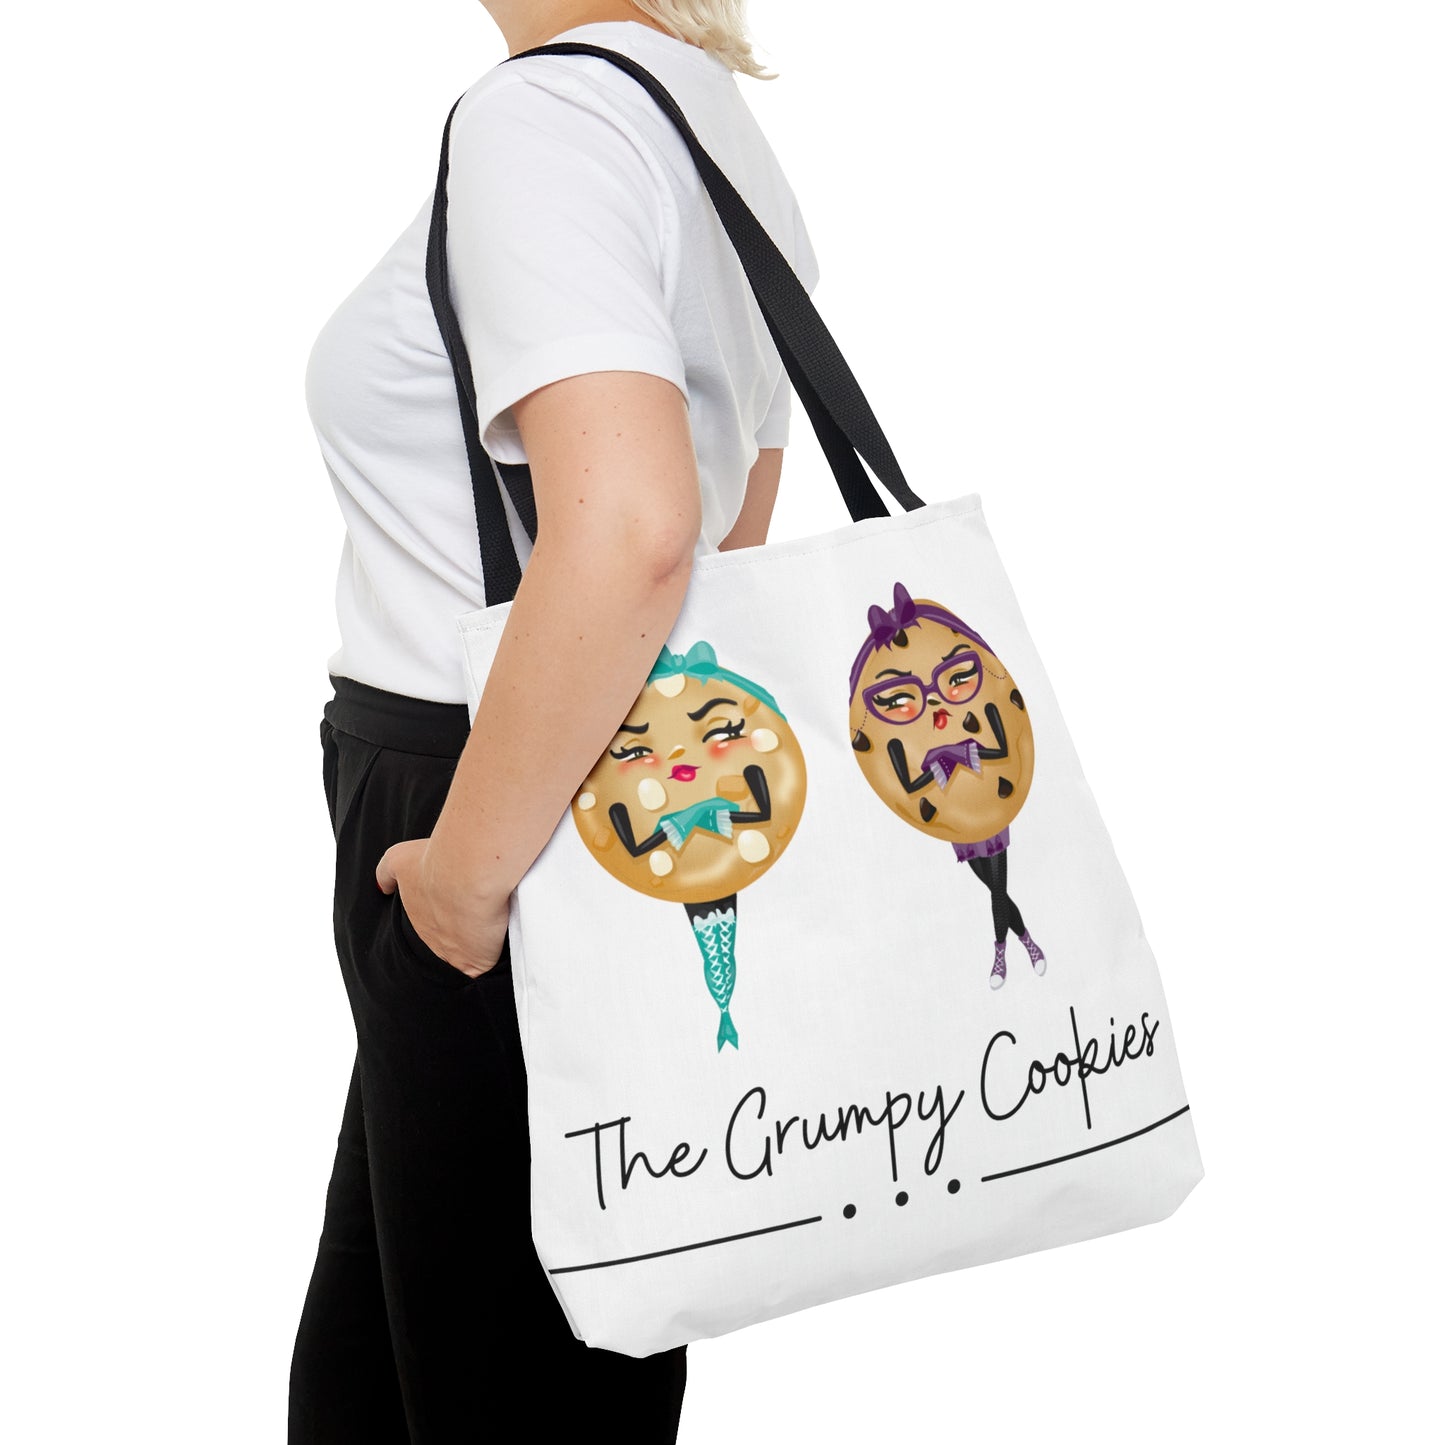 The Grumpy Cookies Tote Bag